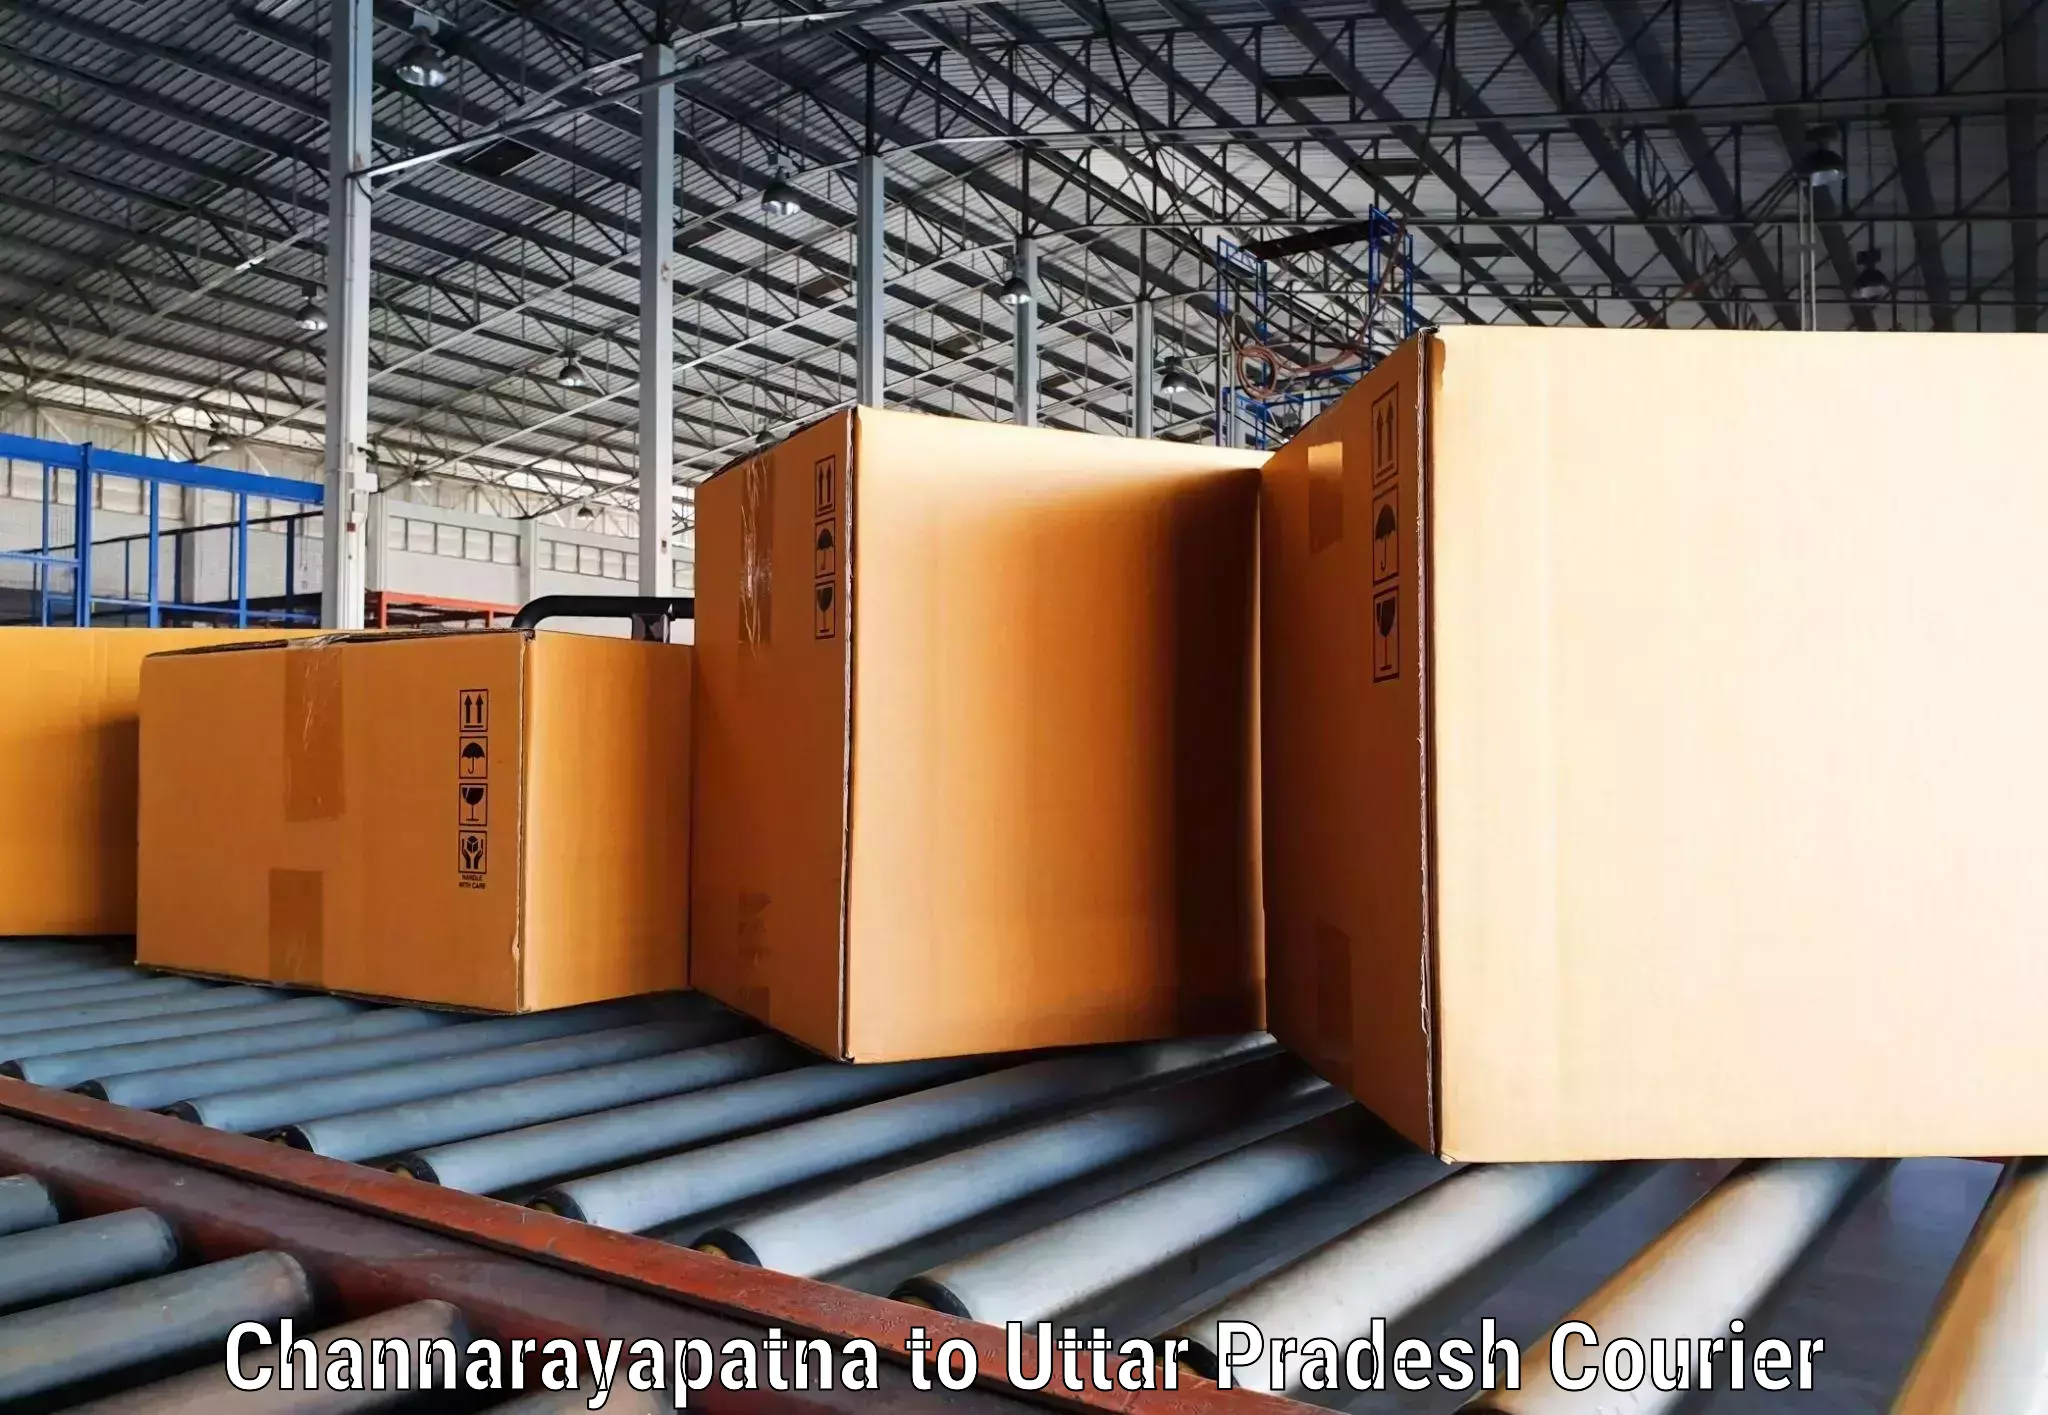 Smart shipping technology Channarayapatna to Ghosi